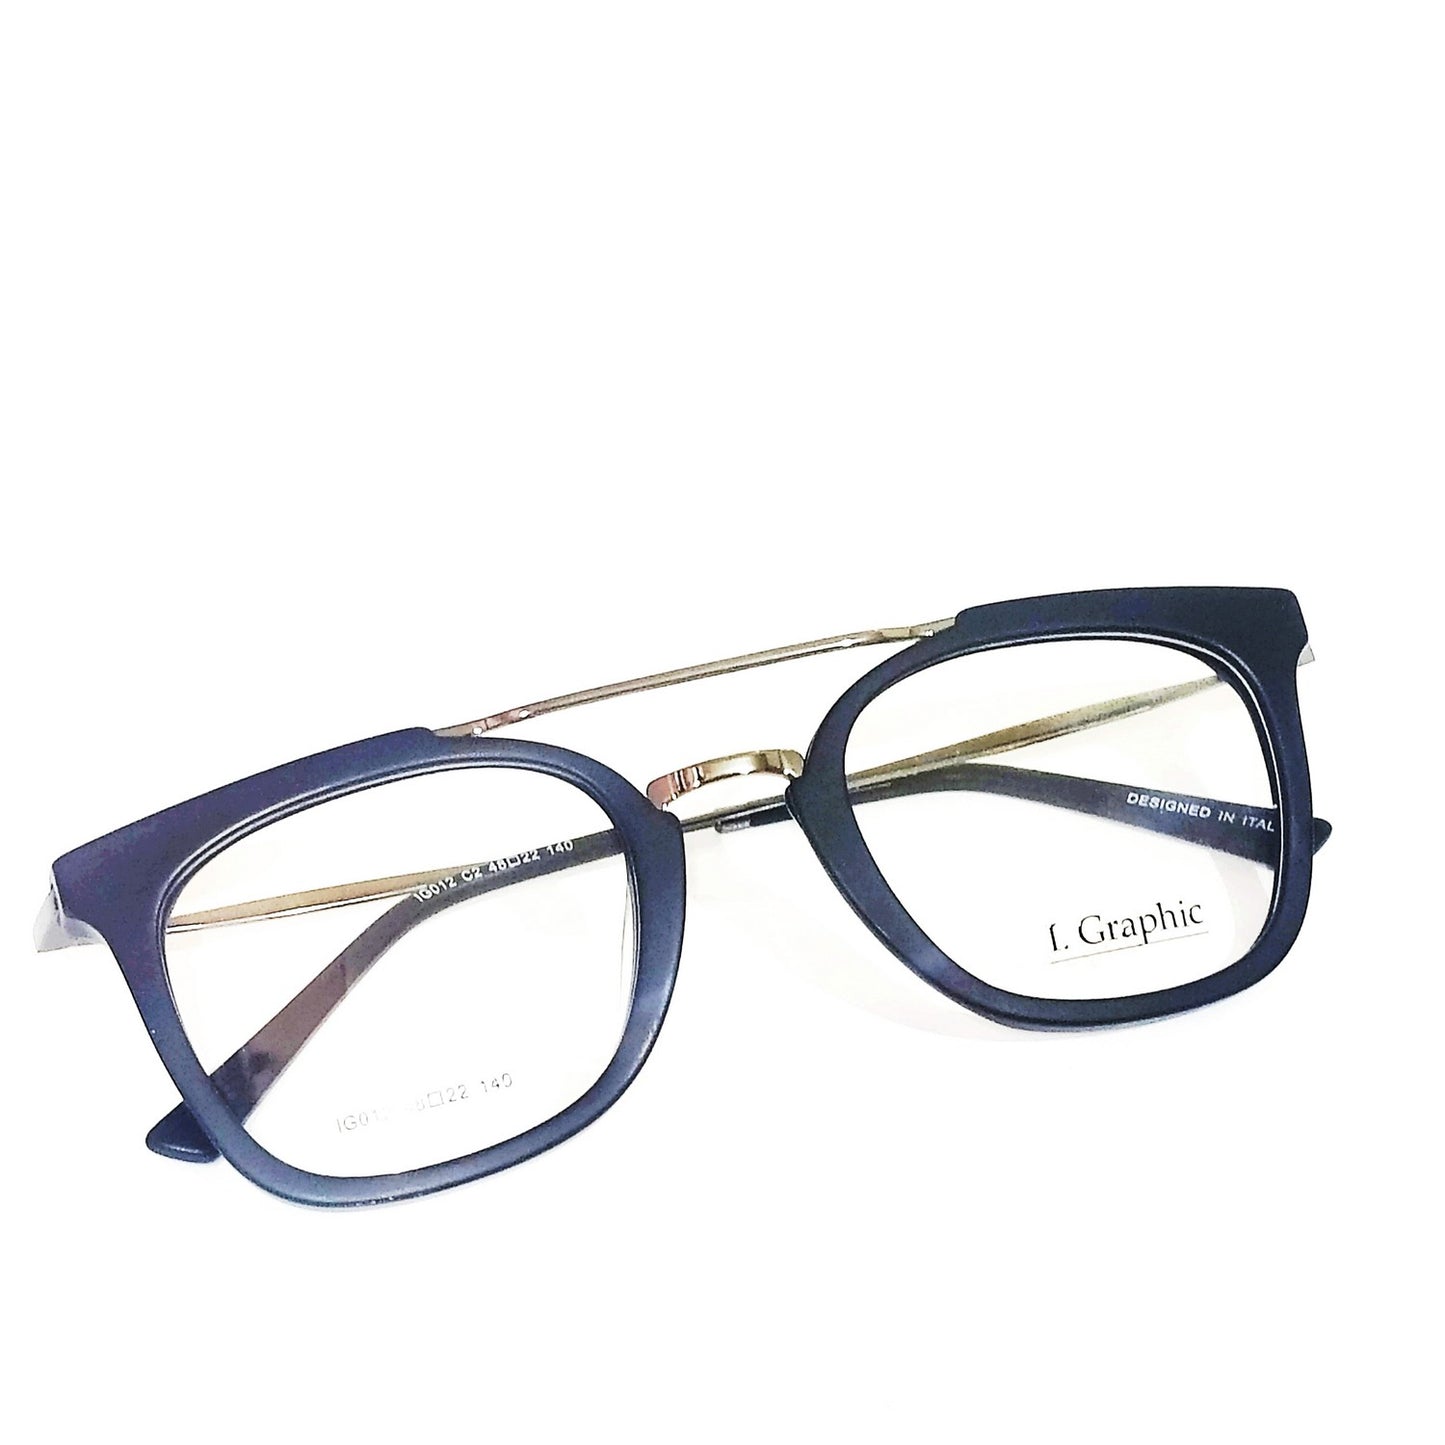 Premium Acetate Frame Black Full Frame Glasses Spectacle Frames for Men and Women IG012